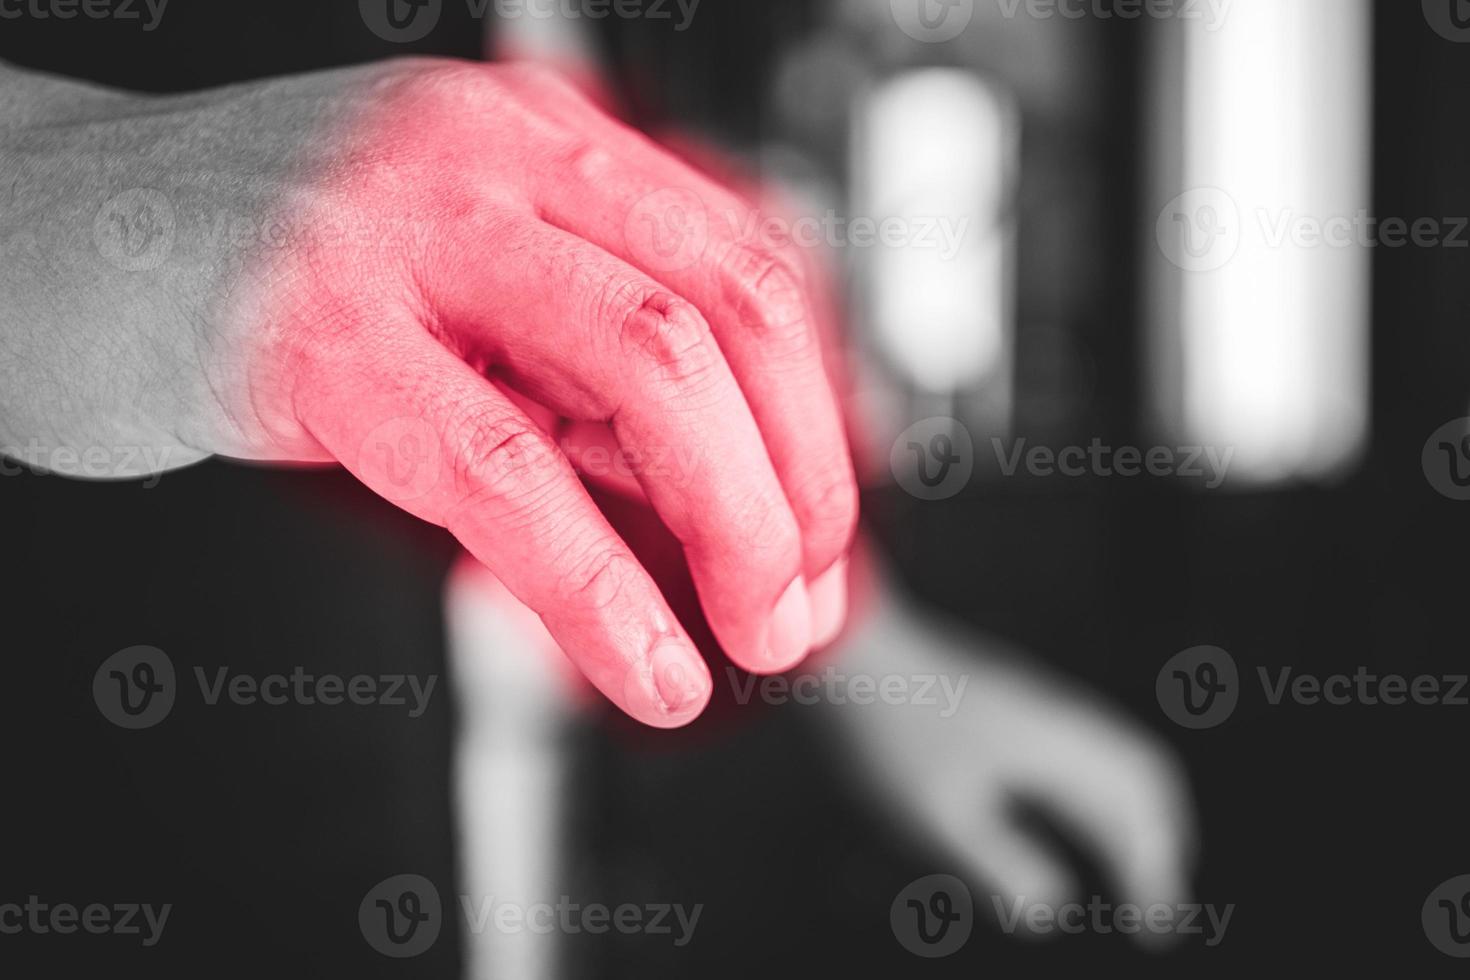 Assimileren Productie verkorten vingers pijn in office syndroom concept. pijnsymptoomgebied wordt  weergegeven met een rode kleur. medium close-up shot in zwart-wit toon.  5729424 Stockfoto